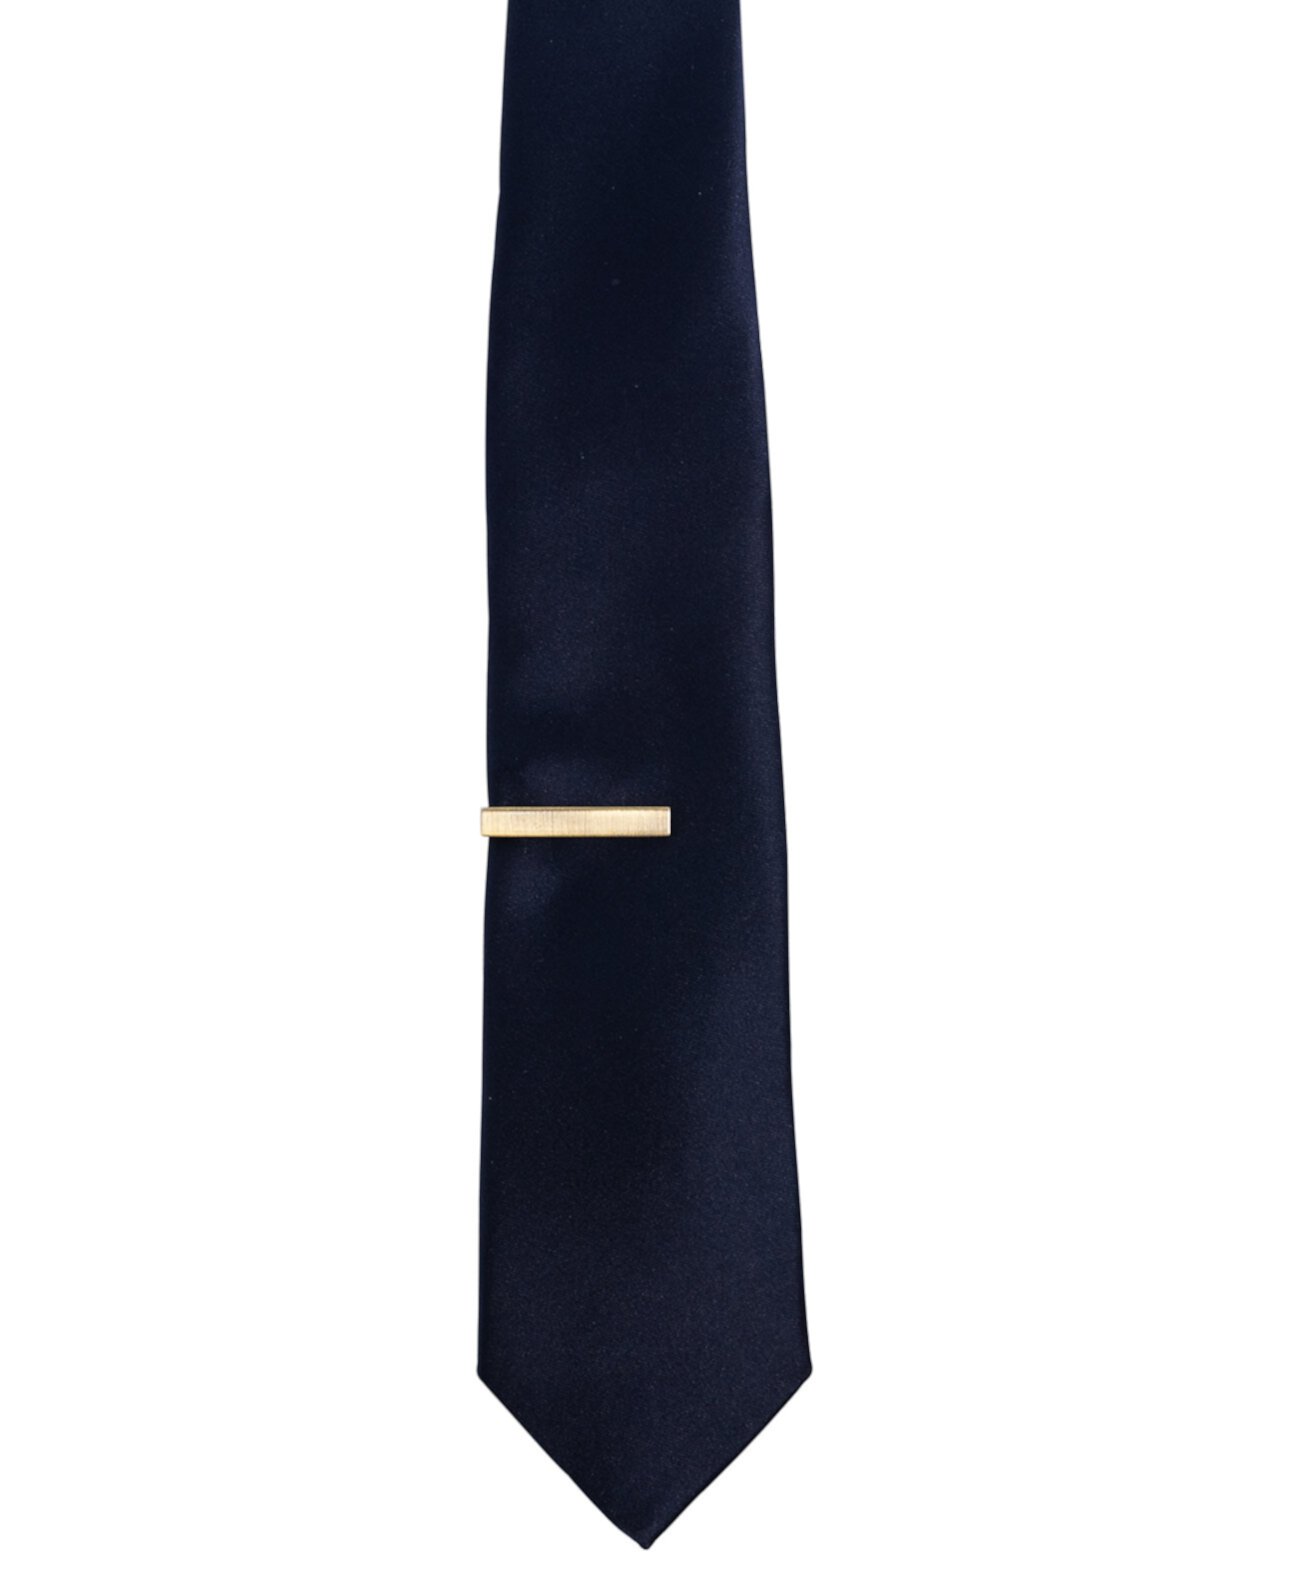 Мужской однотонный галстук и 1-дюймовая перекладина для галстука CONSTRUCT